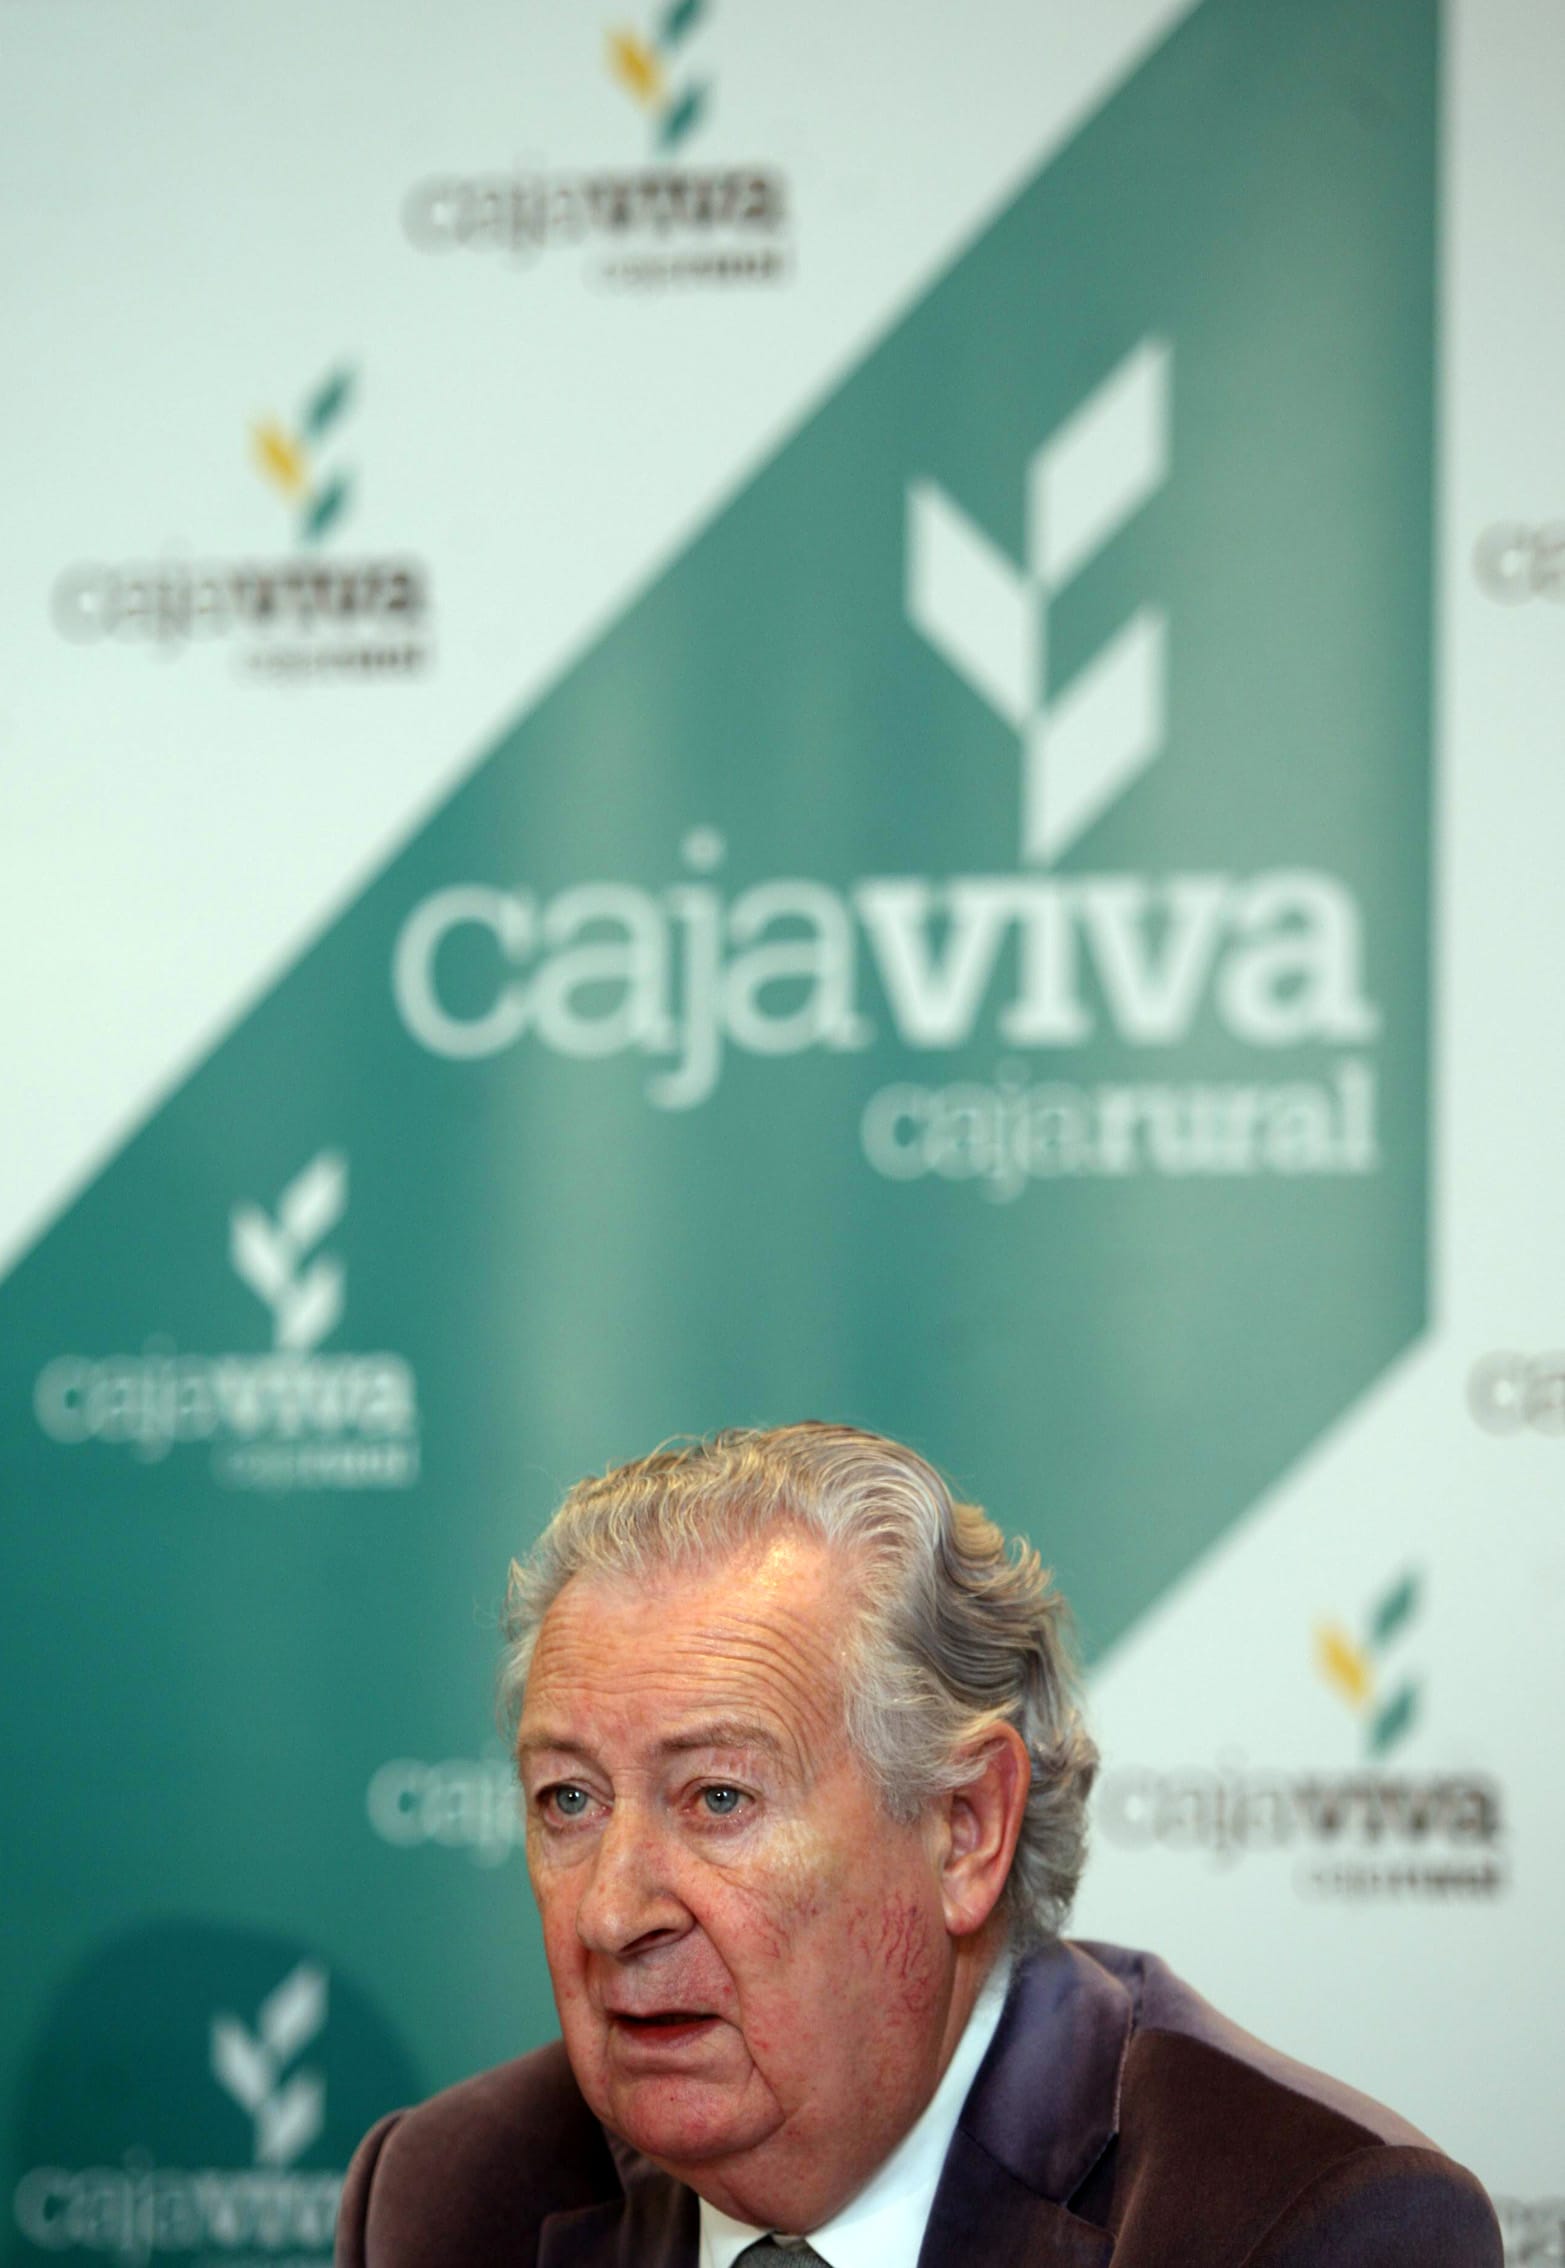 Cajaviva Caja Rural adelanta al día 24 el pago de las pensiones